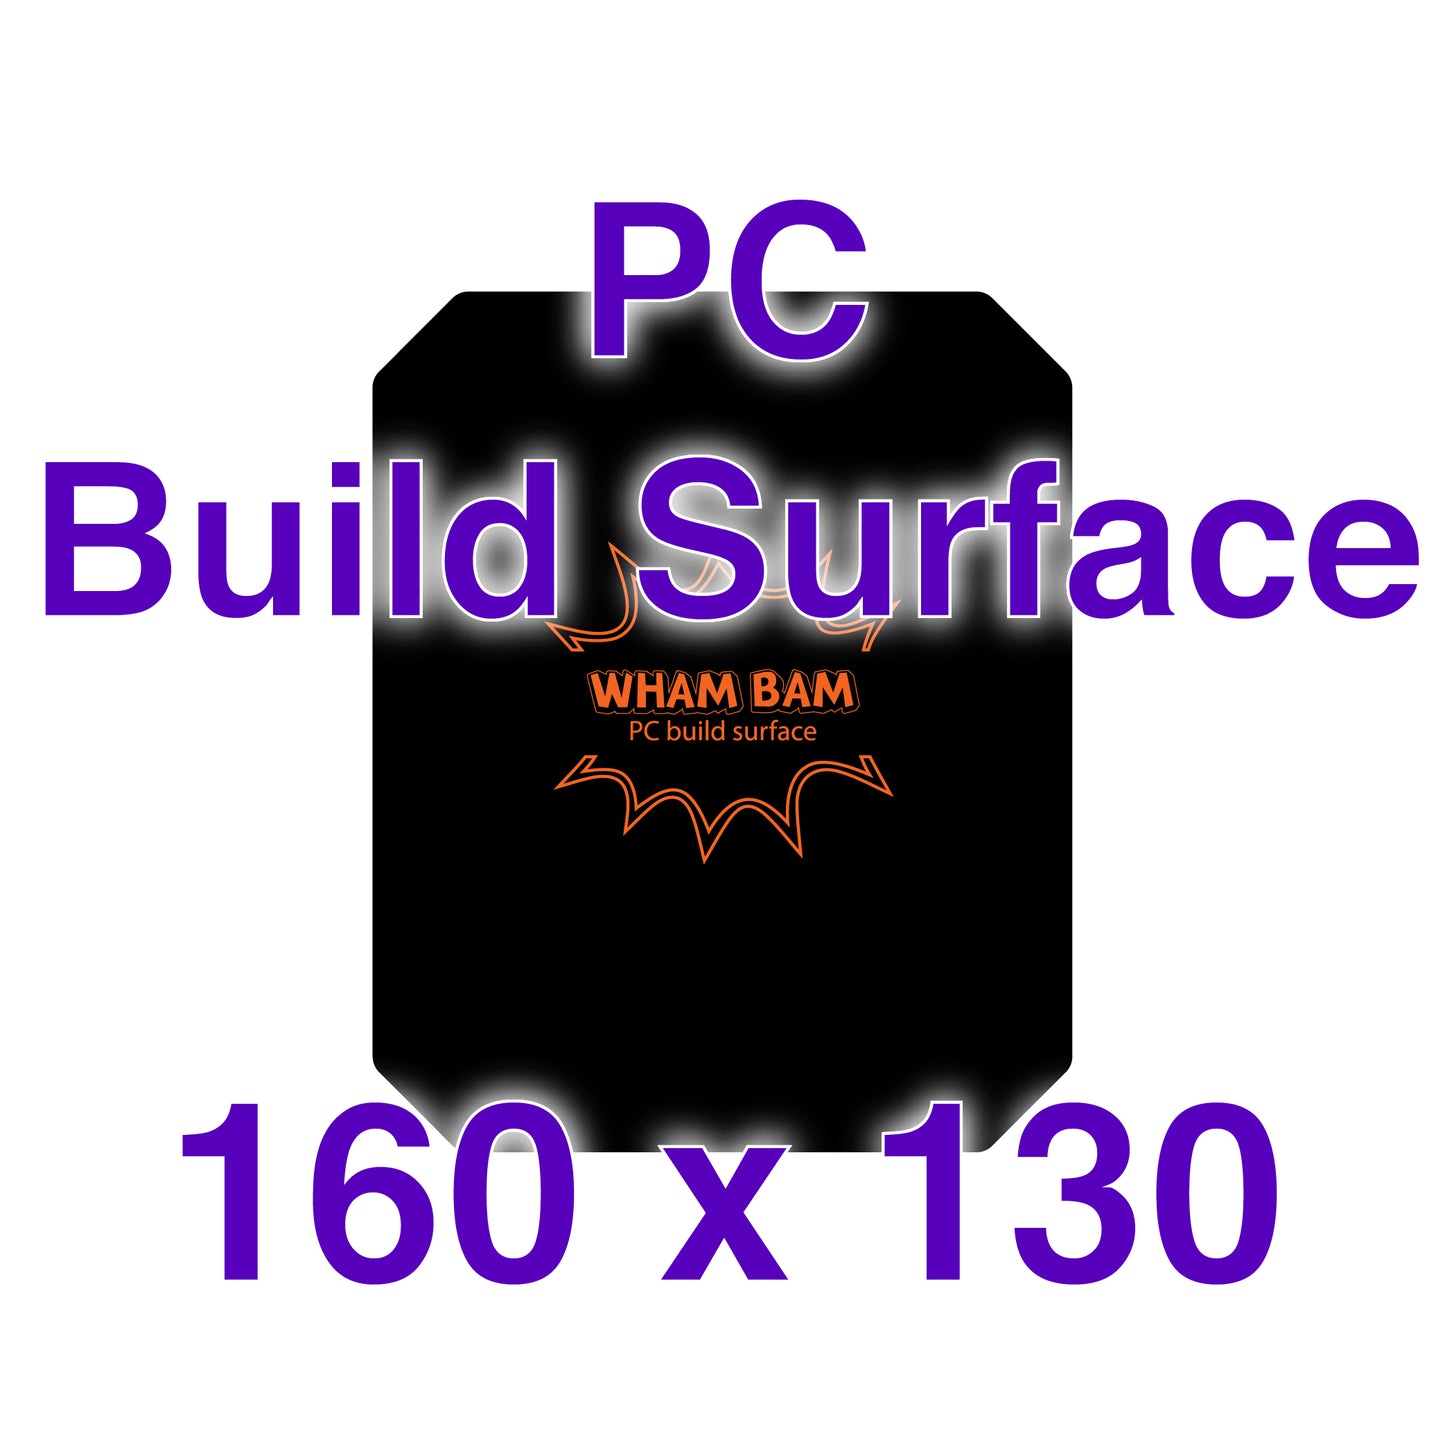 PC Build Surface - 160 x 130